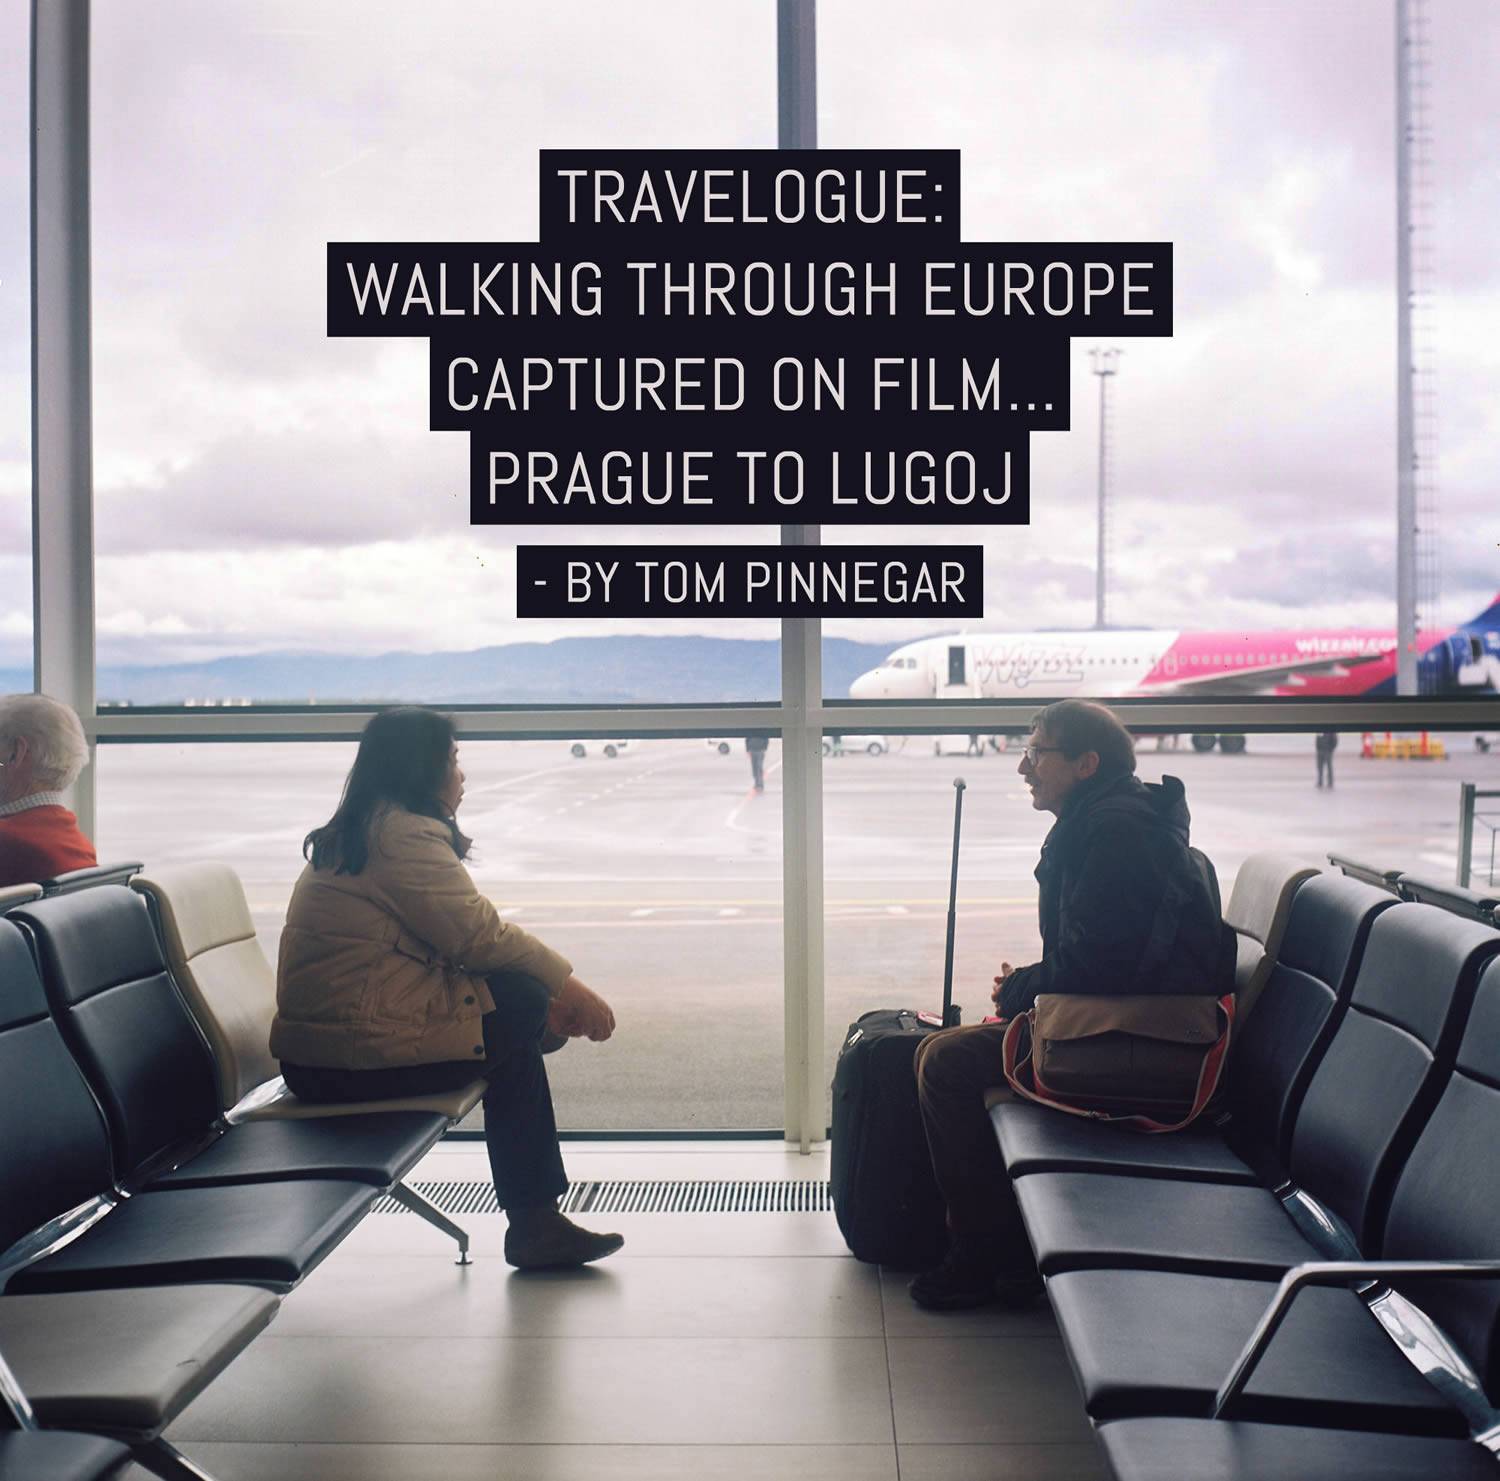 Travelogue: Walking through Europe captured on film Prague to Lugoj